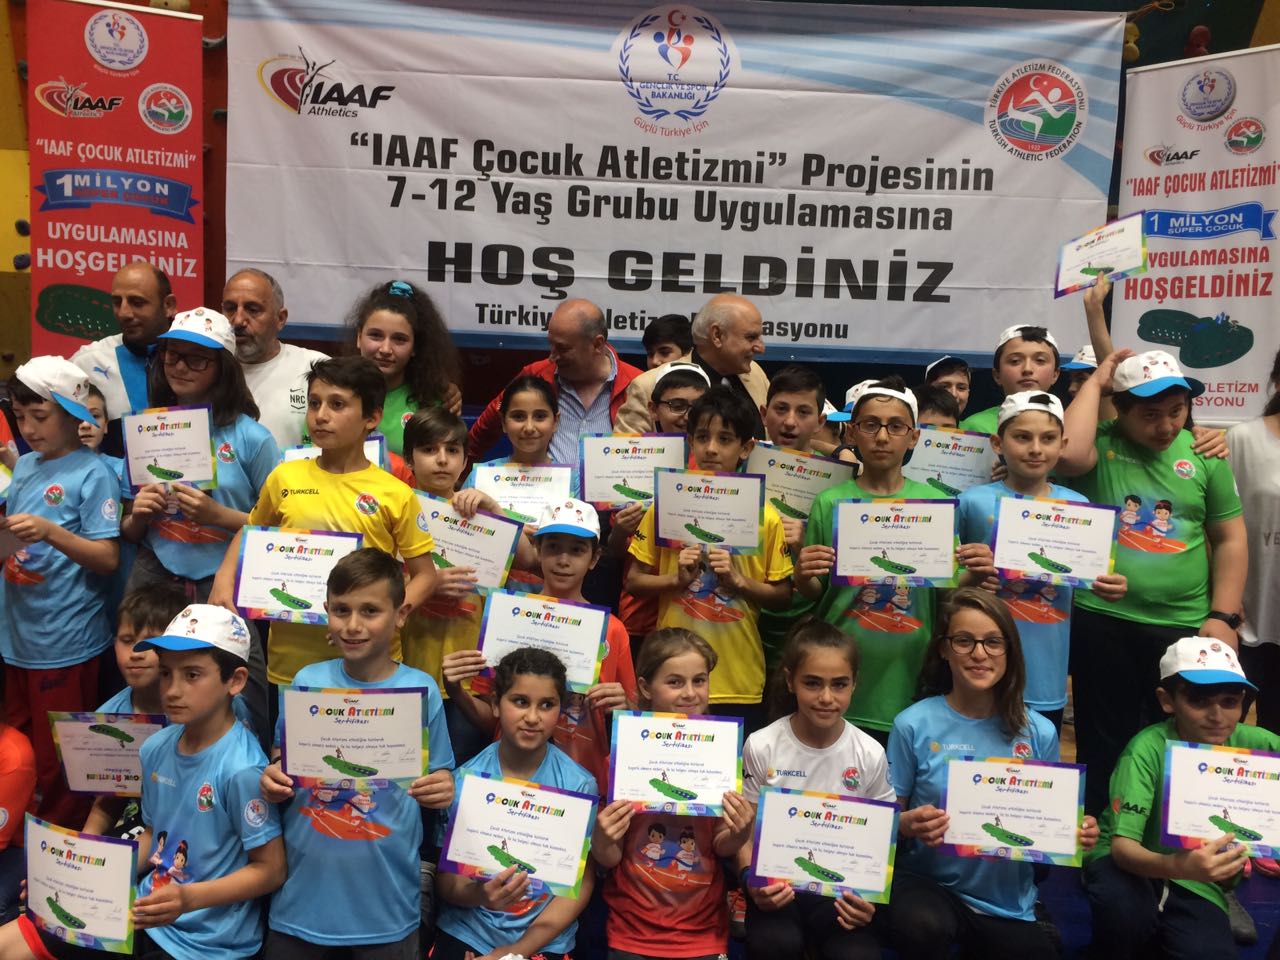 “IAAF Çocuk Atletizmi'' Projesi Samsun'da